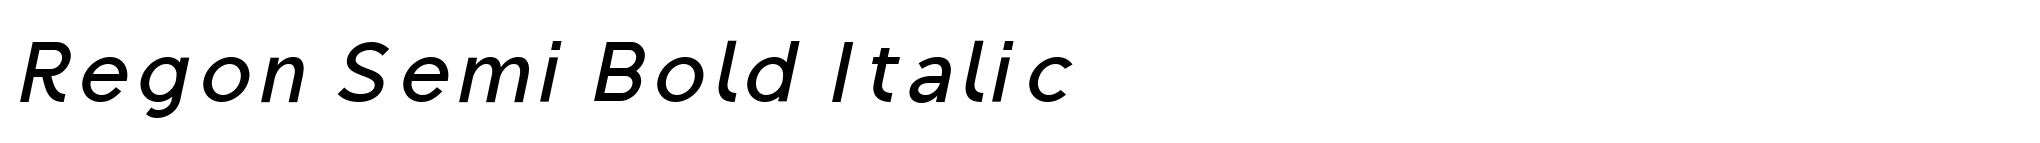 Regon Semi Bold Italic image